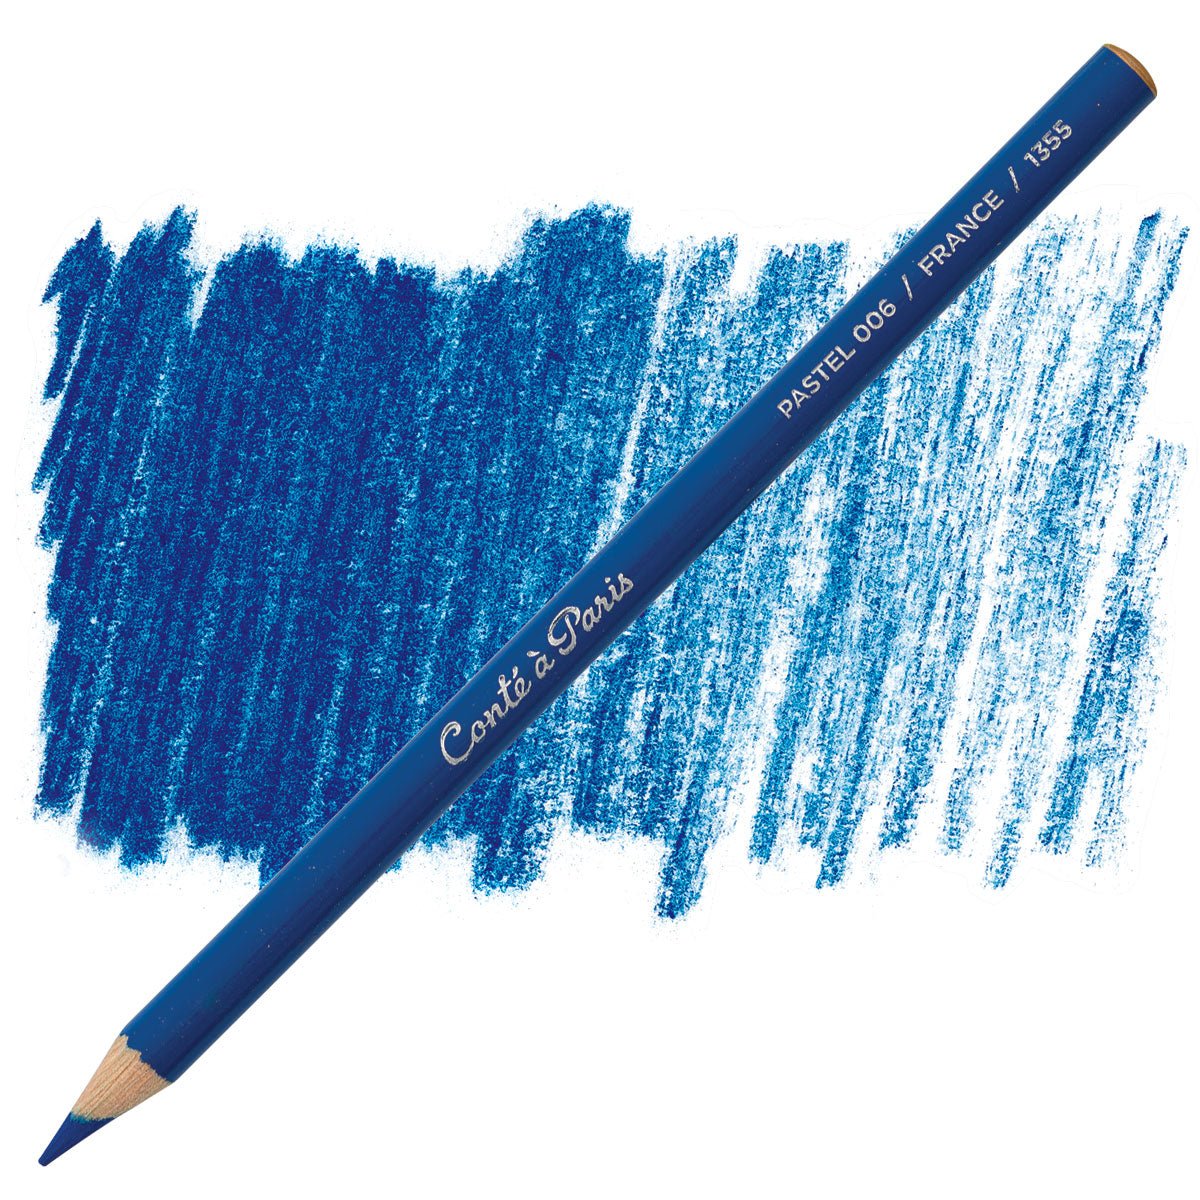 Conte Pastel Pencil 006 King Blue - theartshop.com.au